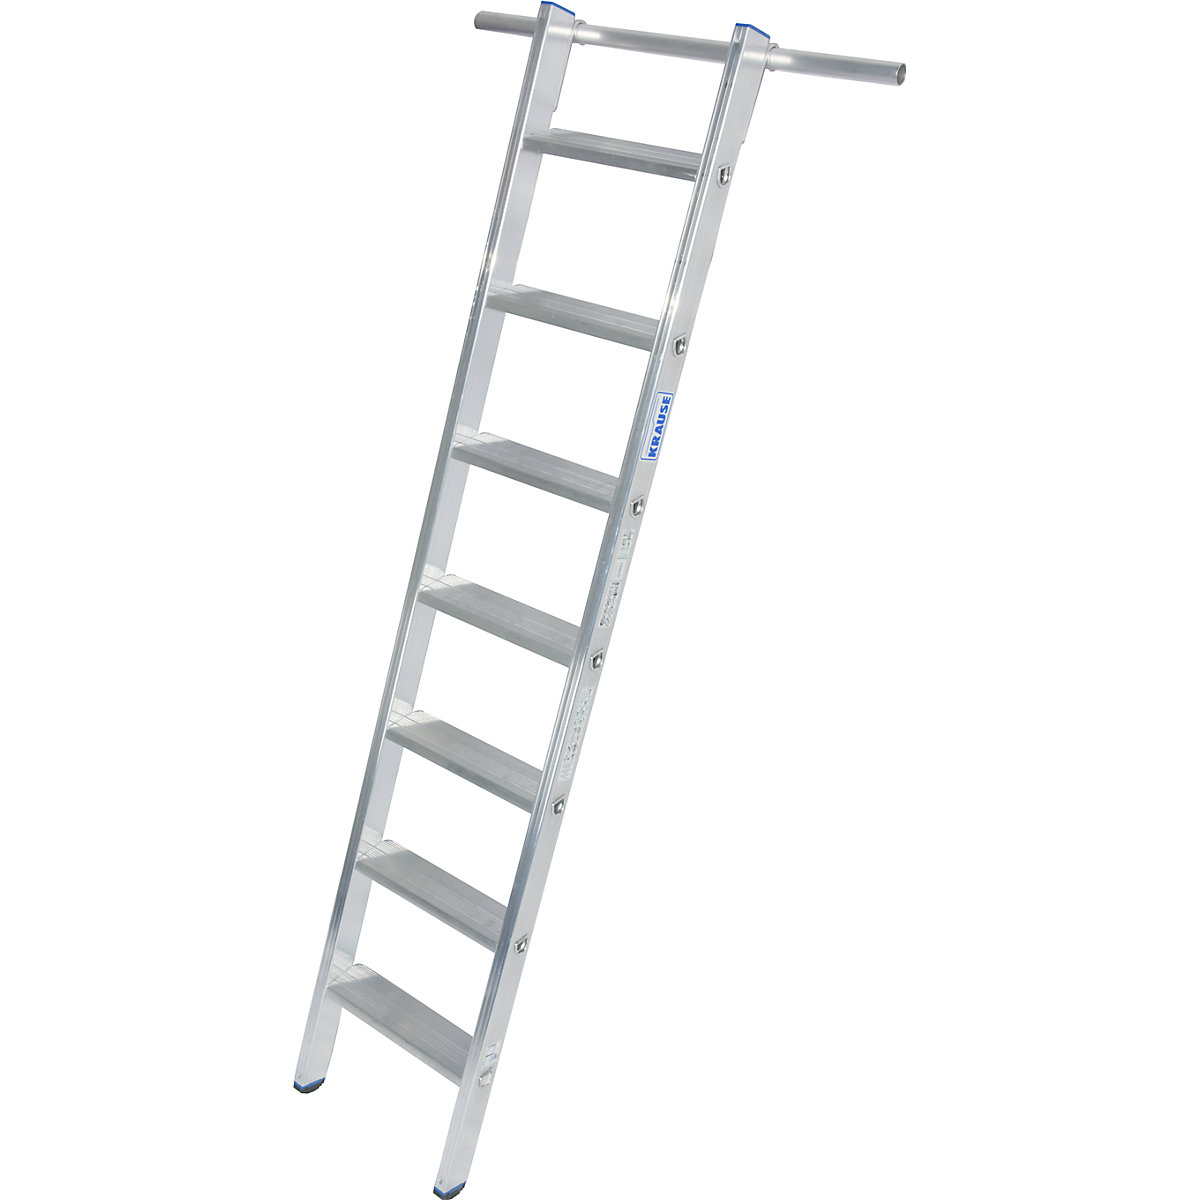 KRAUSE Stufen-Regalleiter, einhängbar, 1 Paar Einhängehaken, 7 Stufen